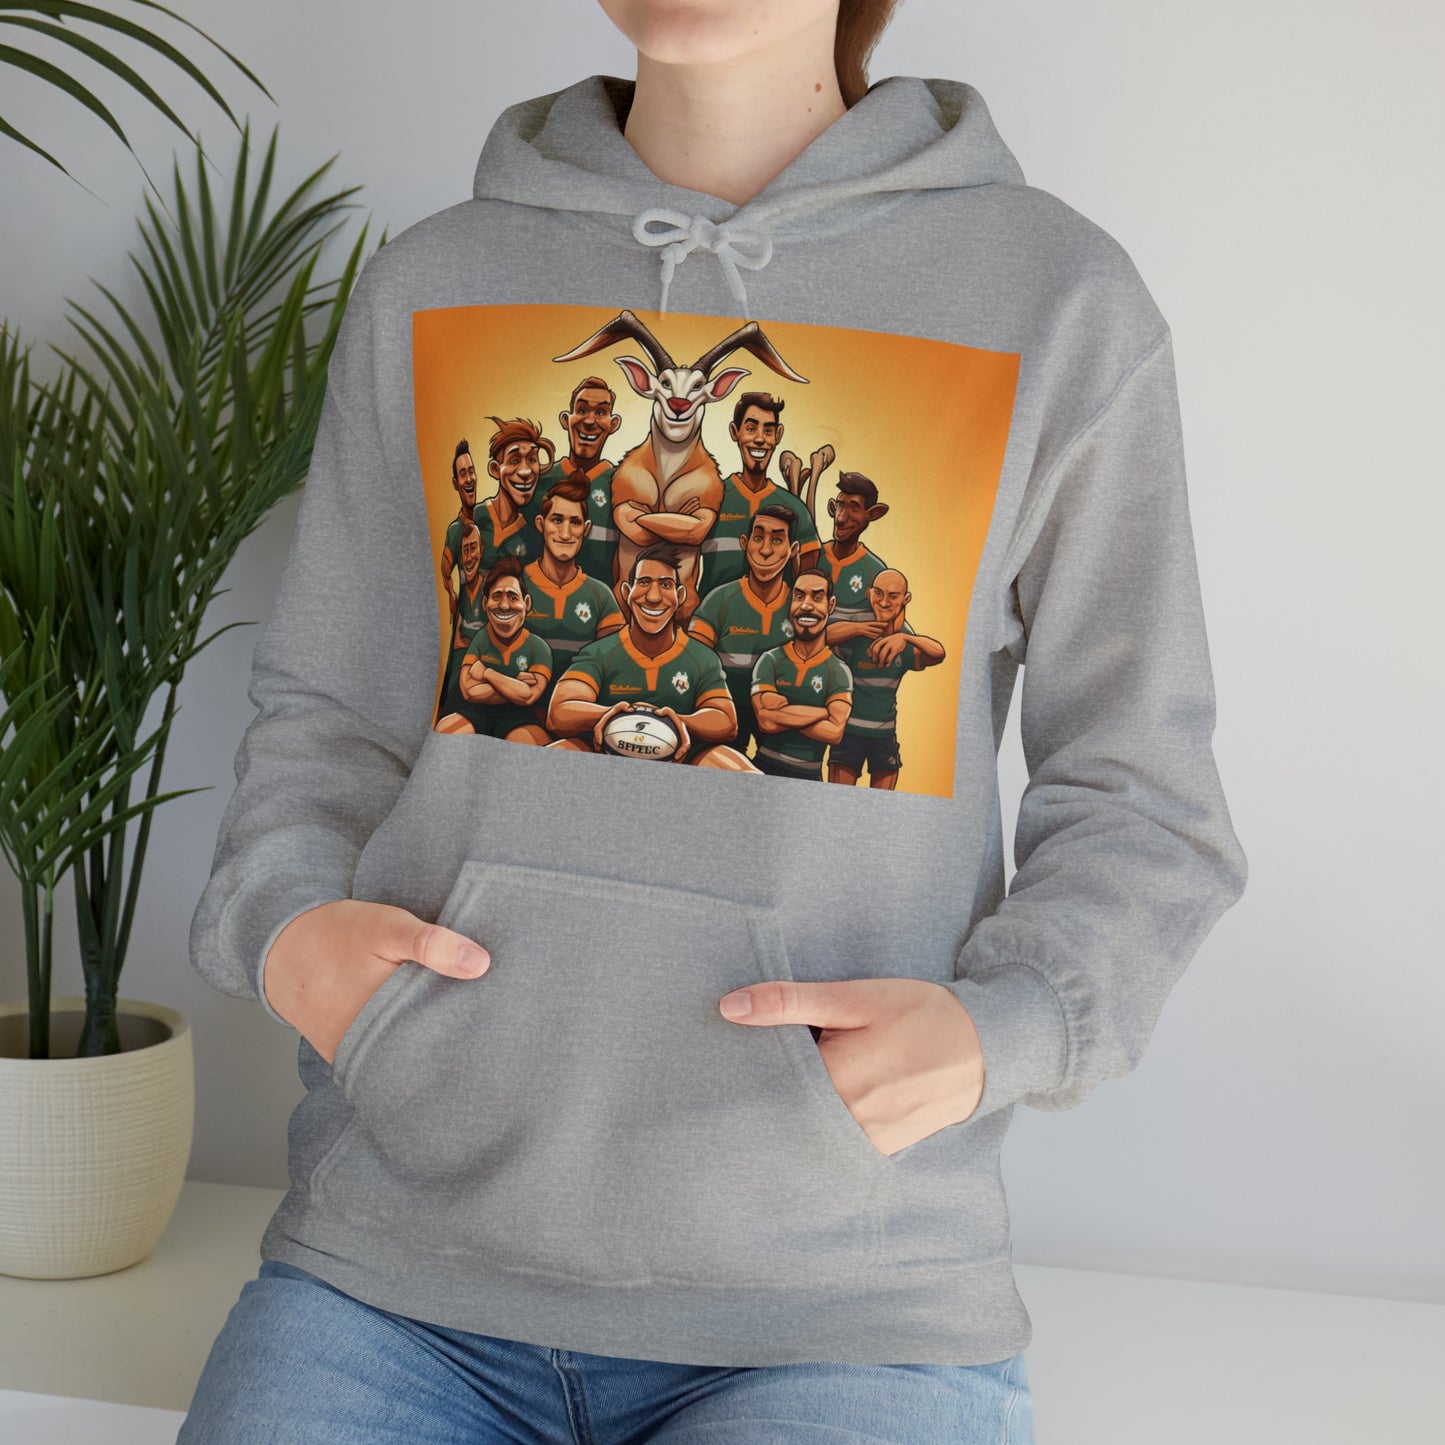 Springboks Team Photo - light hoodies